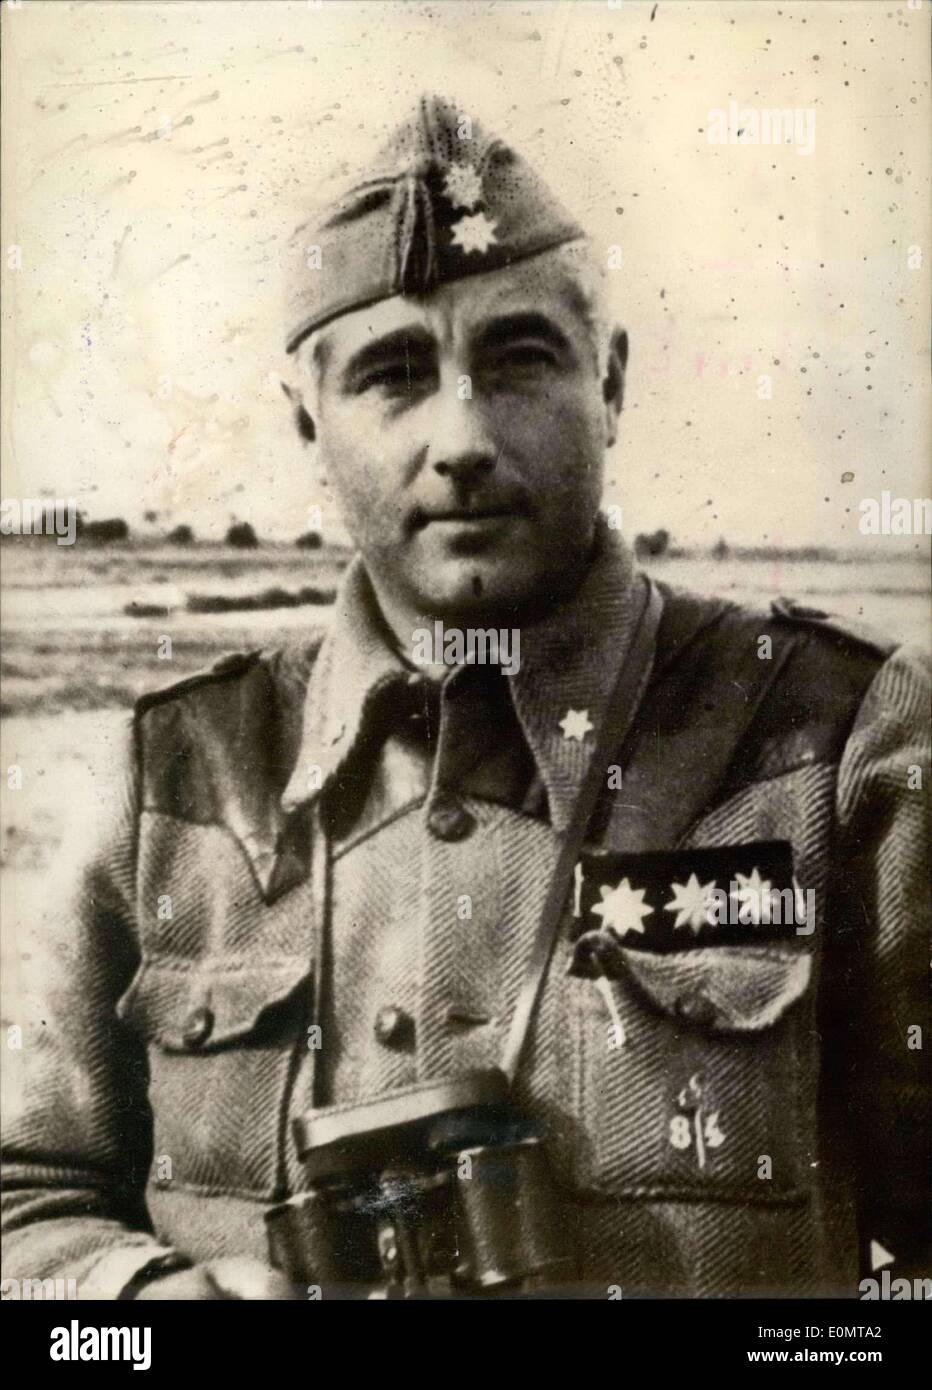 10 août 1956 - Général Paniagua de prendre le commandement au Maroc : Général Valino, le haut commissaire espagnol au Maroc espagnol, a abandonné ses fonctions à la suite de la remise de l'administration générale pour les autorités locales. Paniagua a été nommé commandant en chef des troupes espagnoles au Maroc. Un récent portrait du général Paniagua. Banque D'Images